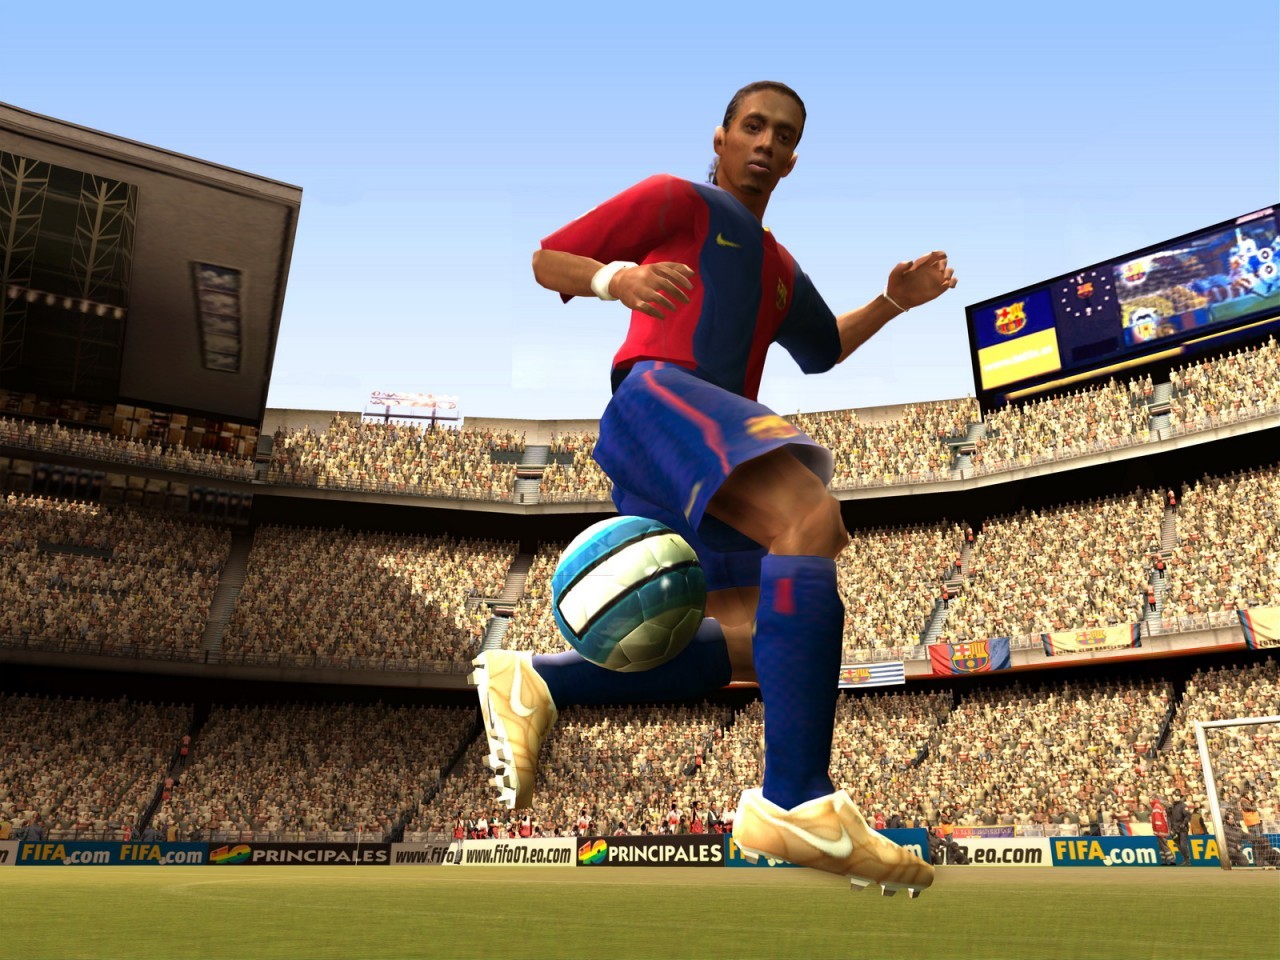 Fifa igruha. ФИФА Soccer 07. FIFA 07 Soccer. Игра FIFA 2007. FIFA 07 Xbox 360.